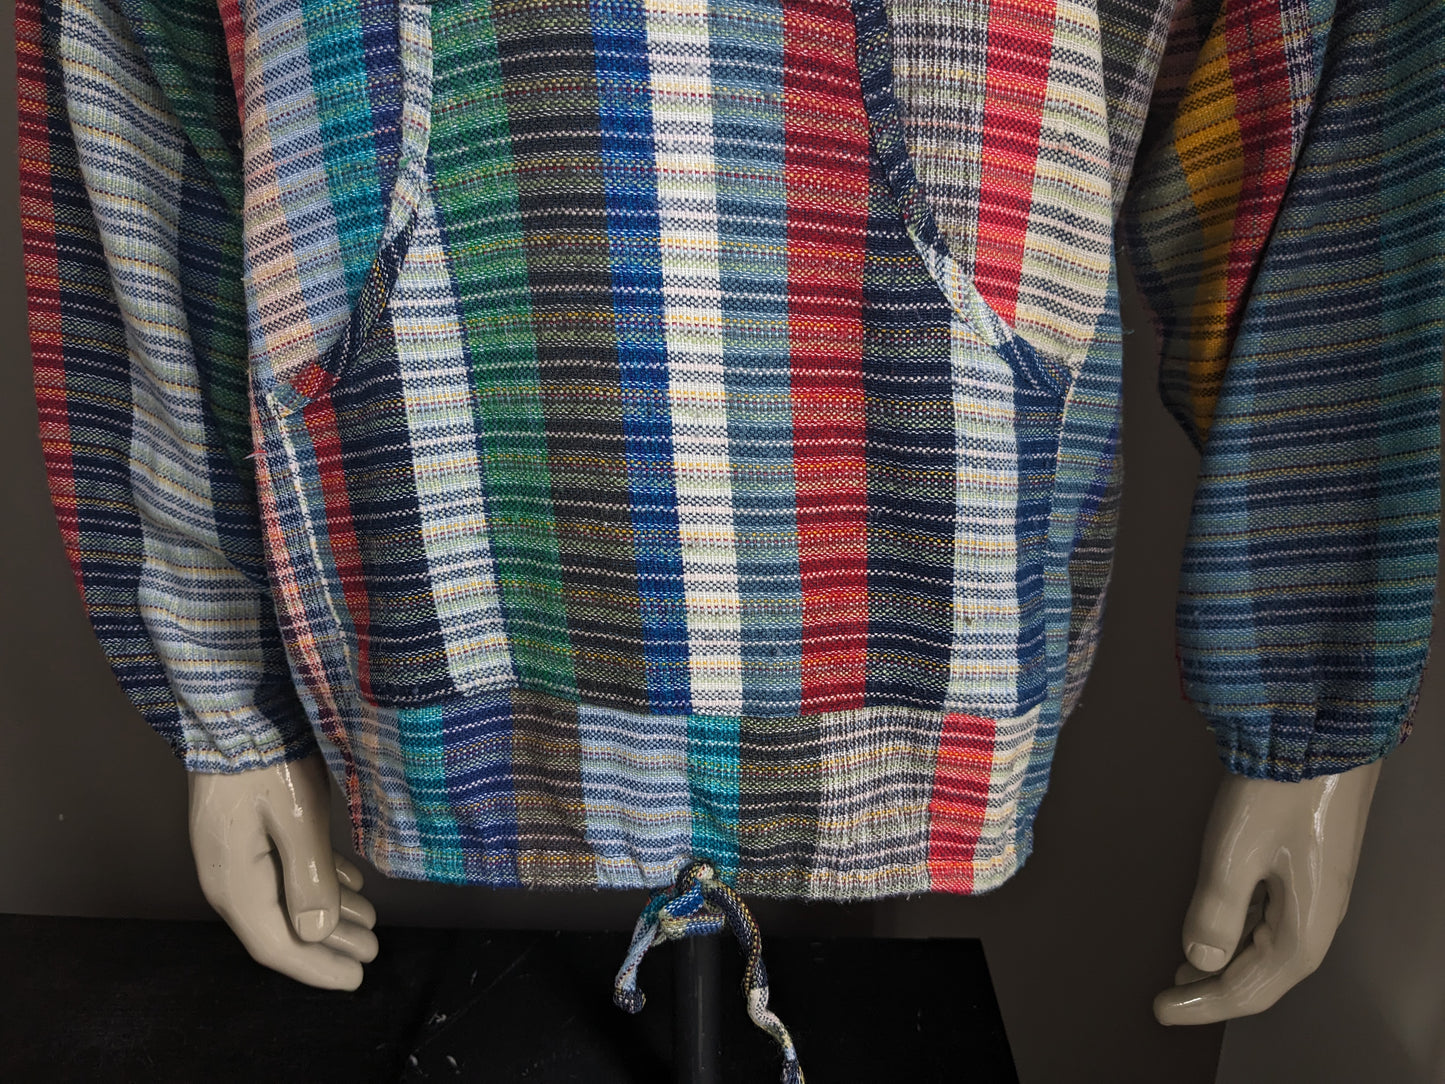 Vintage overhemd shirt met mao / boeren- / opstaande kraag. Gekleurd motief. Maat 2XL / XXL.